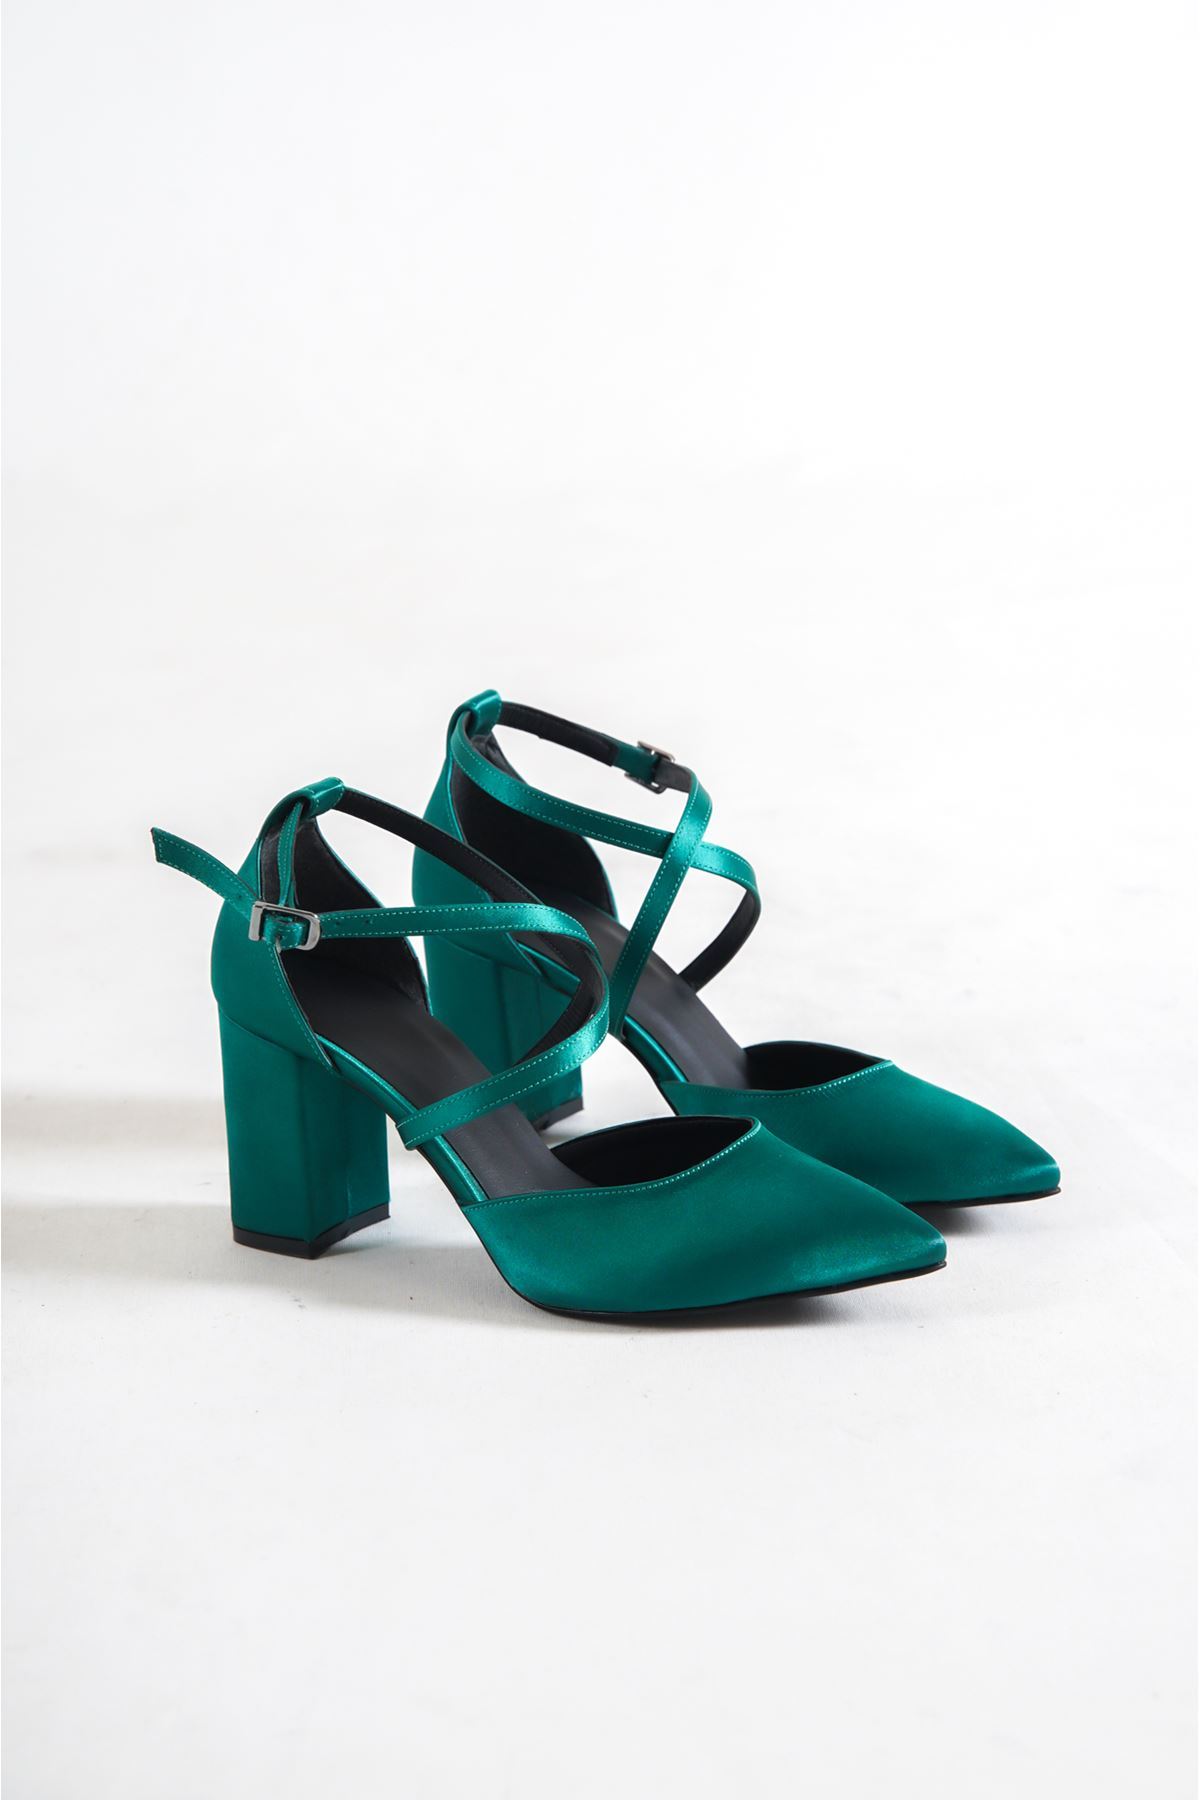 Captur Yeşil Saten Kısa Topuklu Kadın Ayakkabı